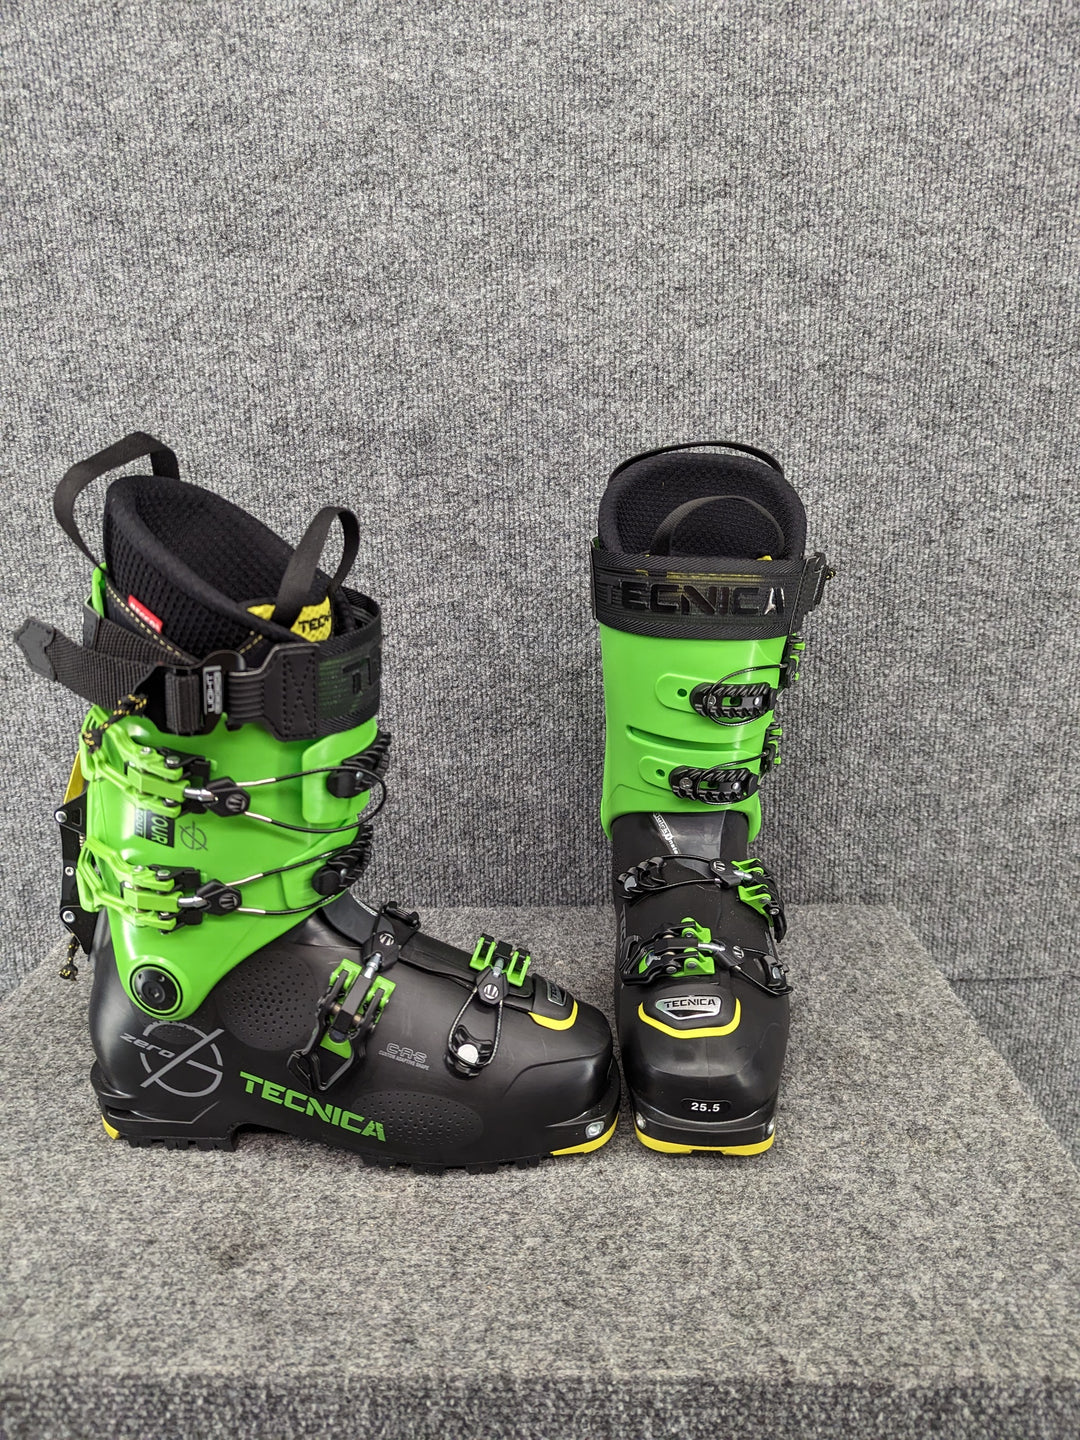 Tecnica Size 7.5/25.5 Men's Alpine Ski Boots – Rambleraven Gear Trader